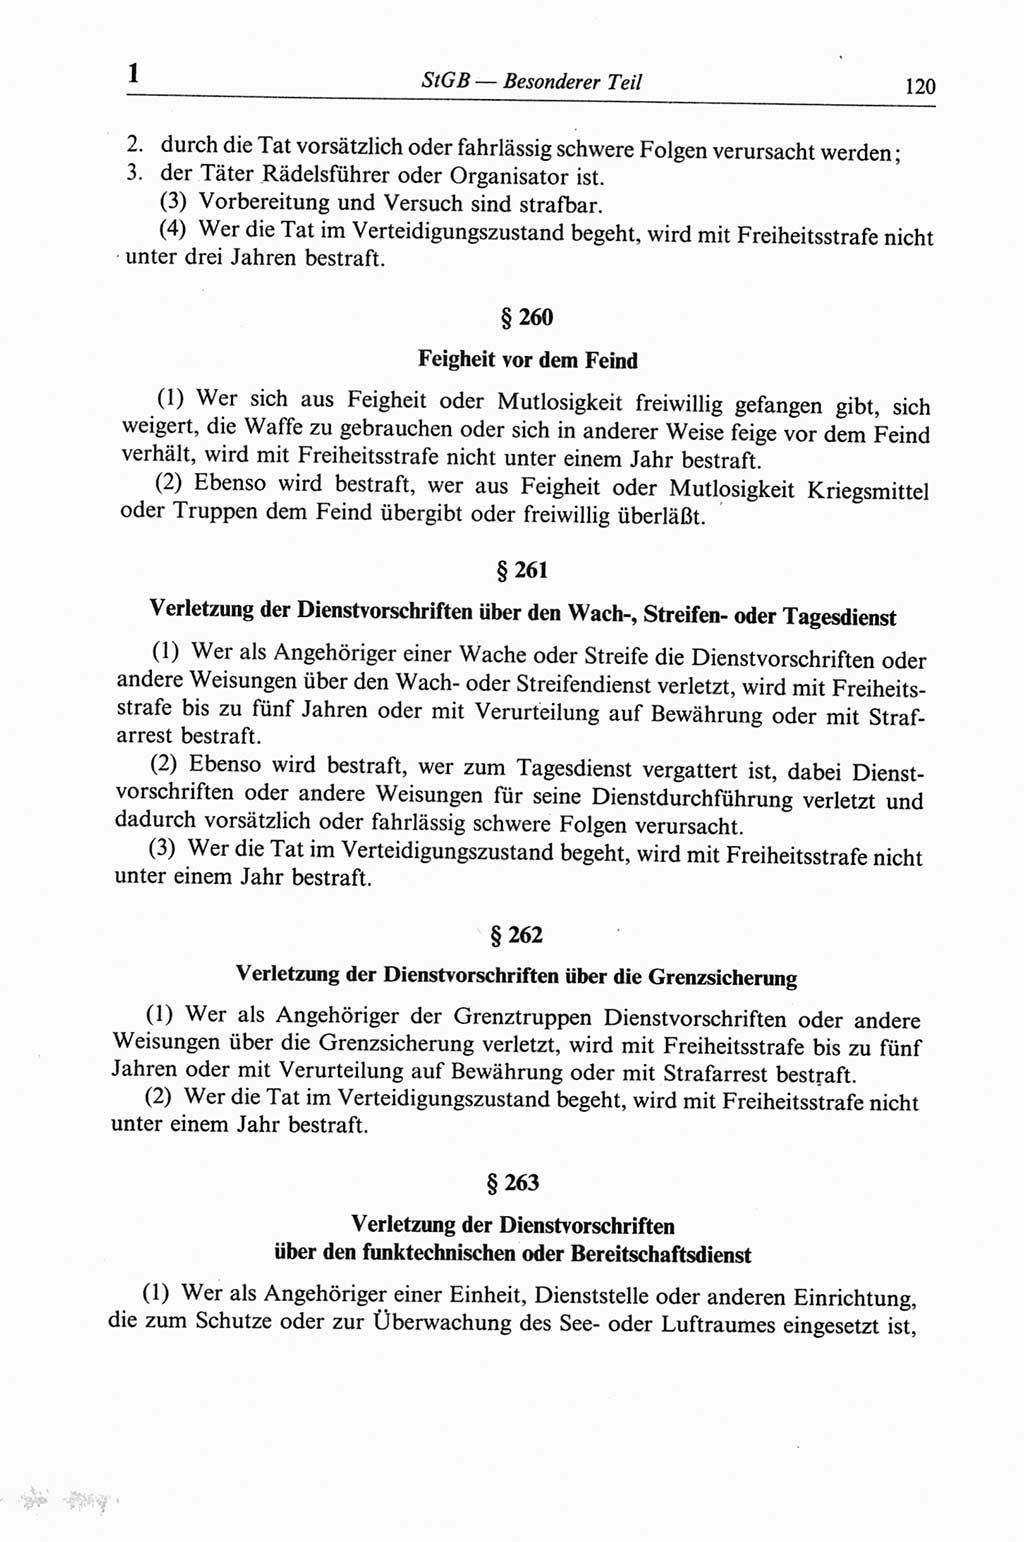 Strafgesetzbuch (StGB) der Deutschen Demokratischen Republik (DDR) und angrenzende Gesetze und Bestimmungen 1968, Seite 120 (StGB Ges. Best. DDR 1968, S. 120)